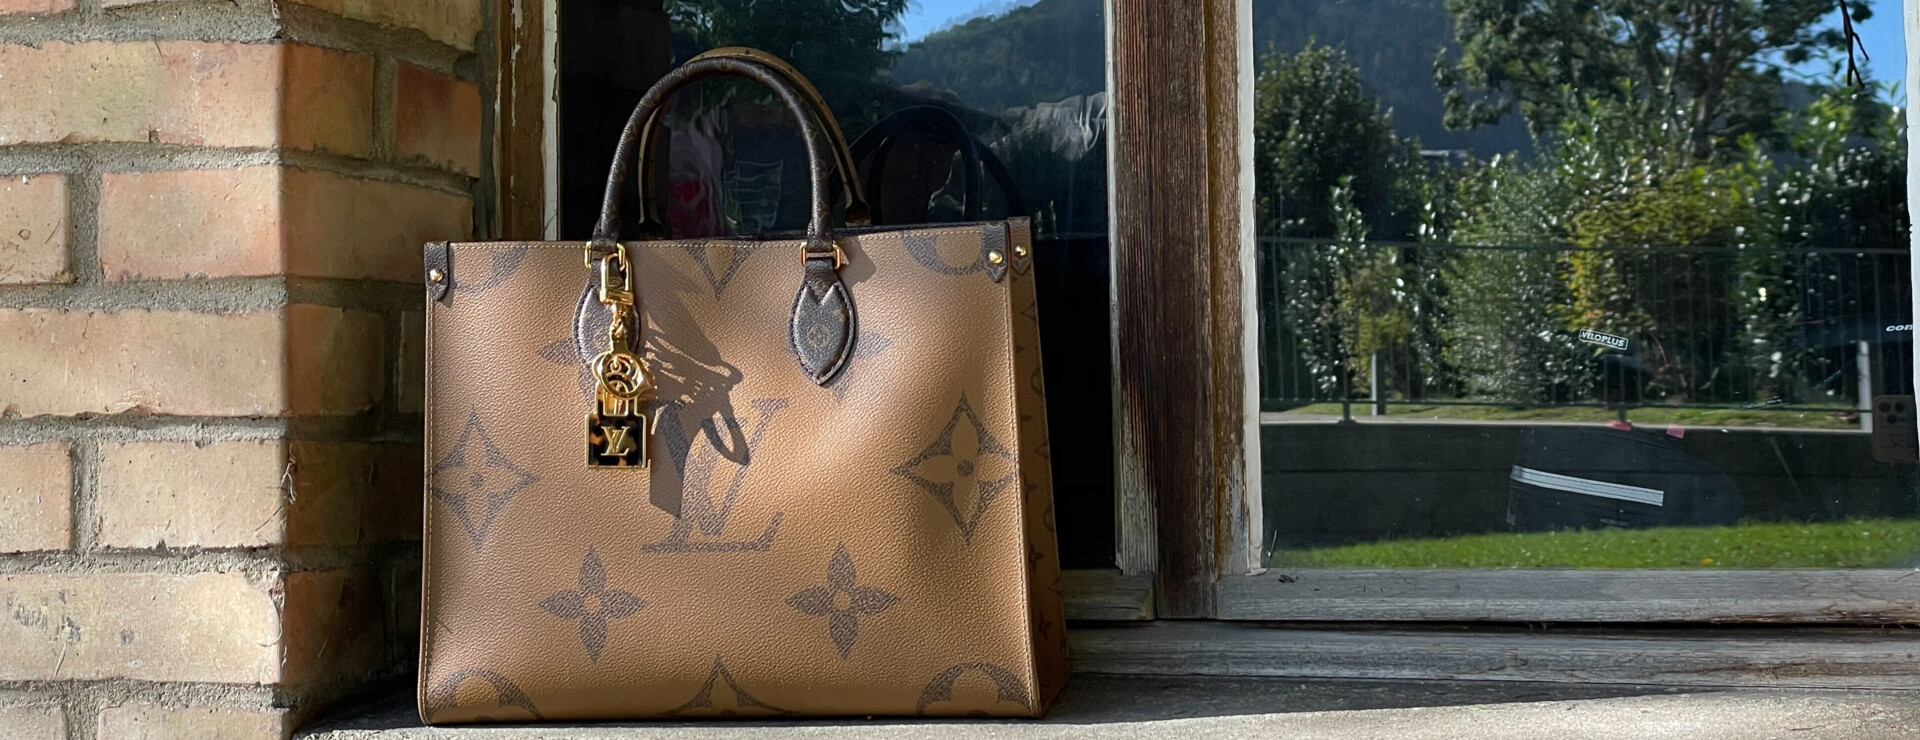 Exklusiver Shopper von Louis Vuitton in Braun - feminin und stylisch